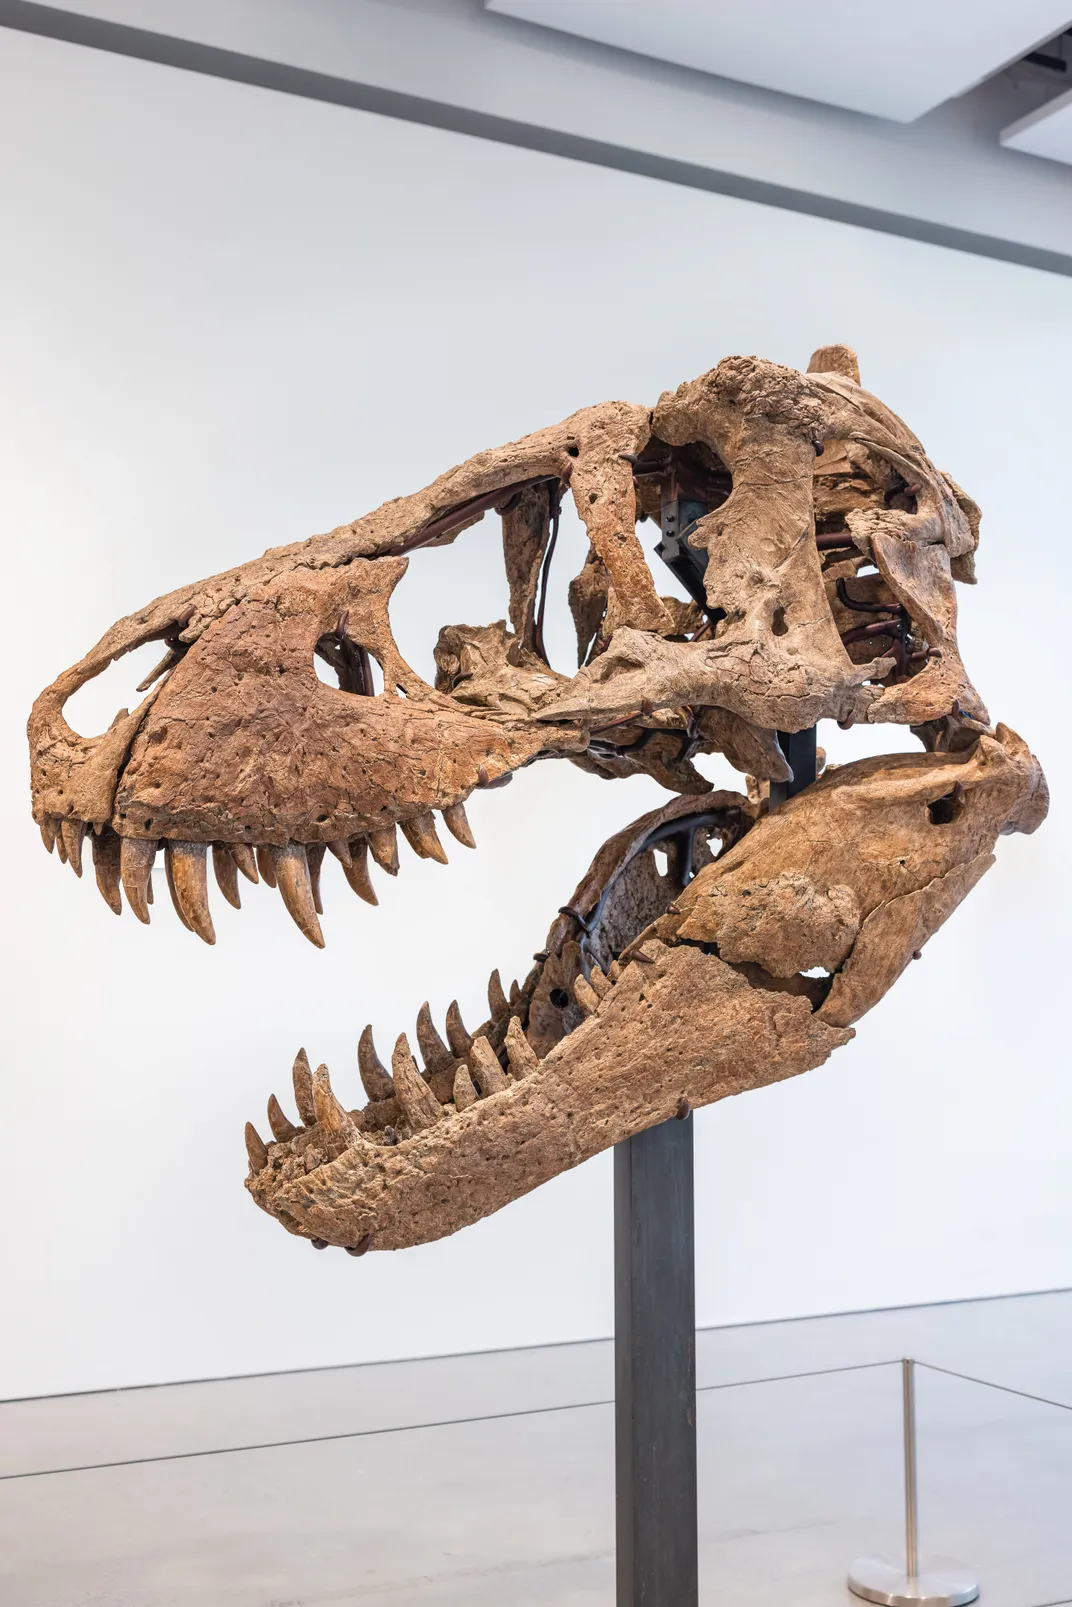 T. rex skull on a pedestal